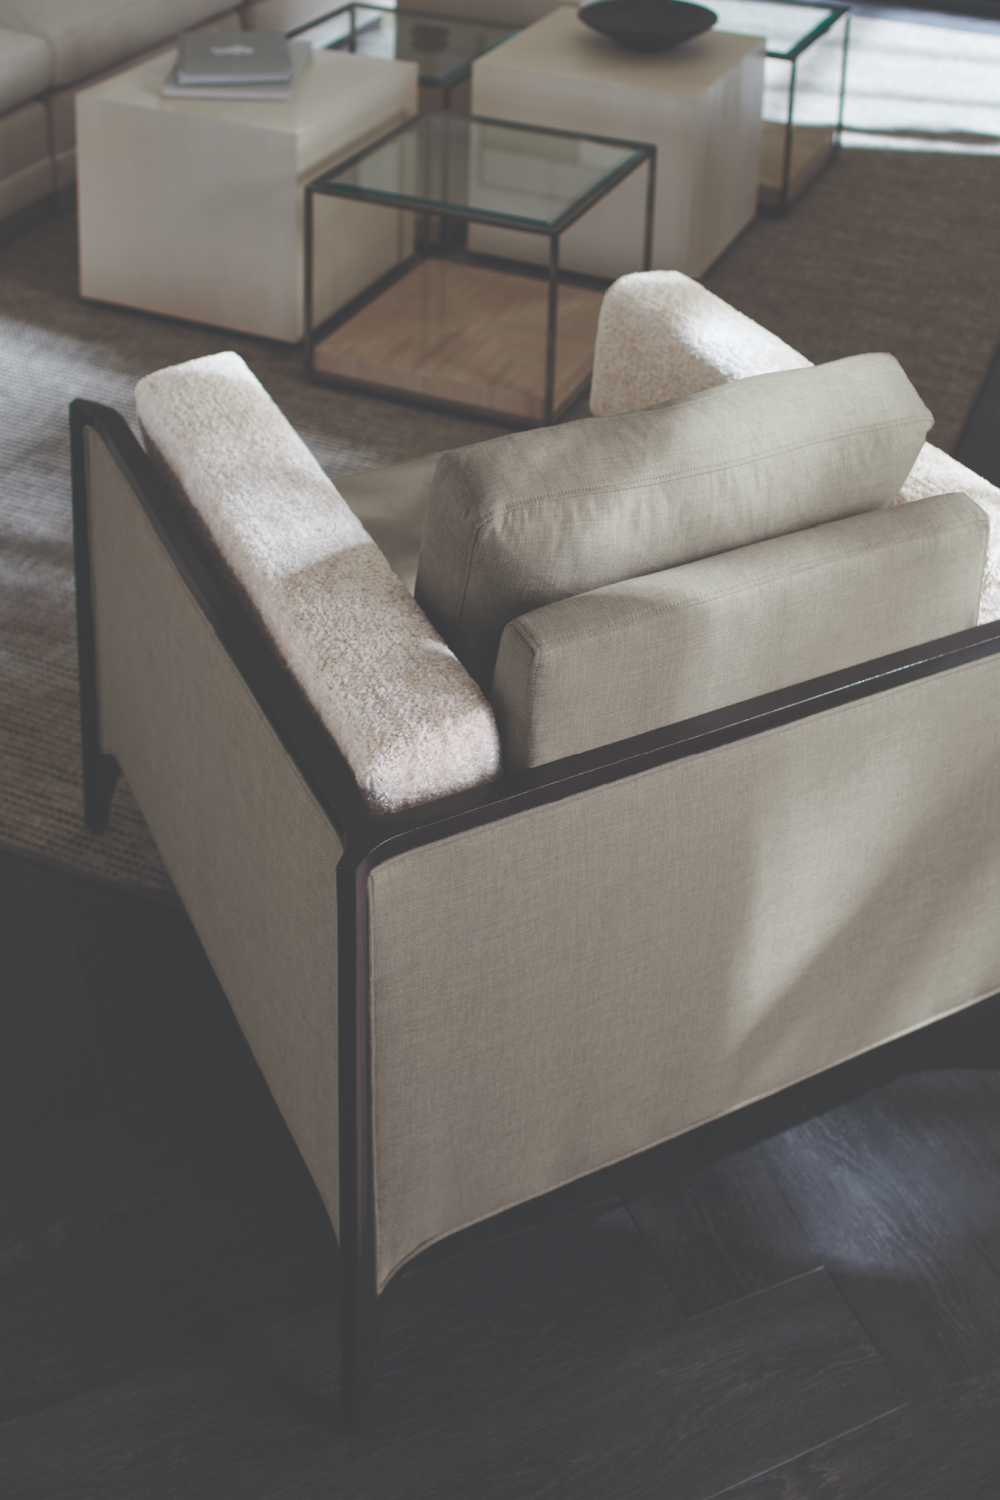 Gray Angular Lounge Chair | Caracole Bolster Me | Oroa.com